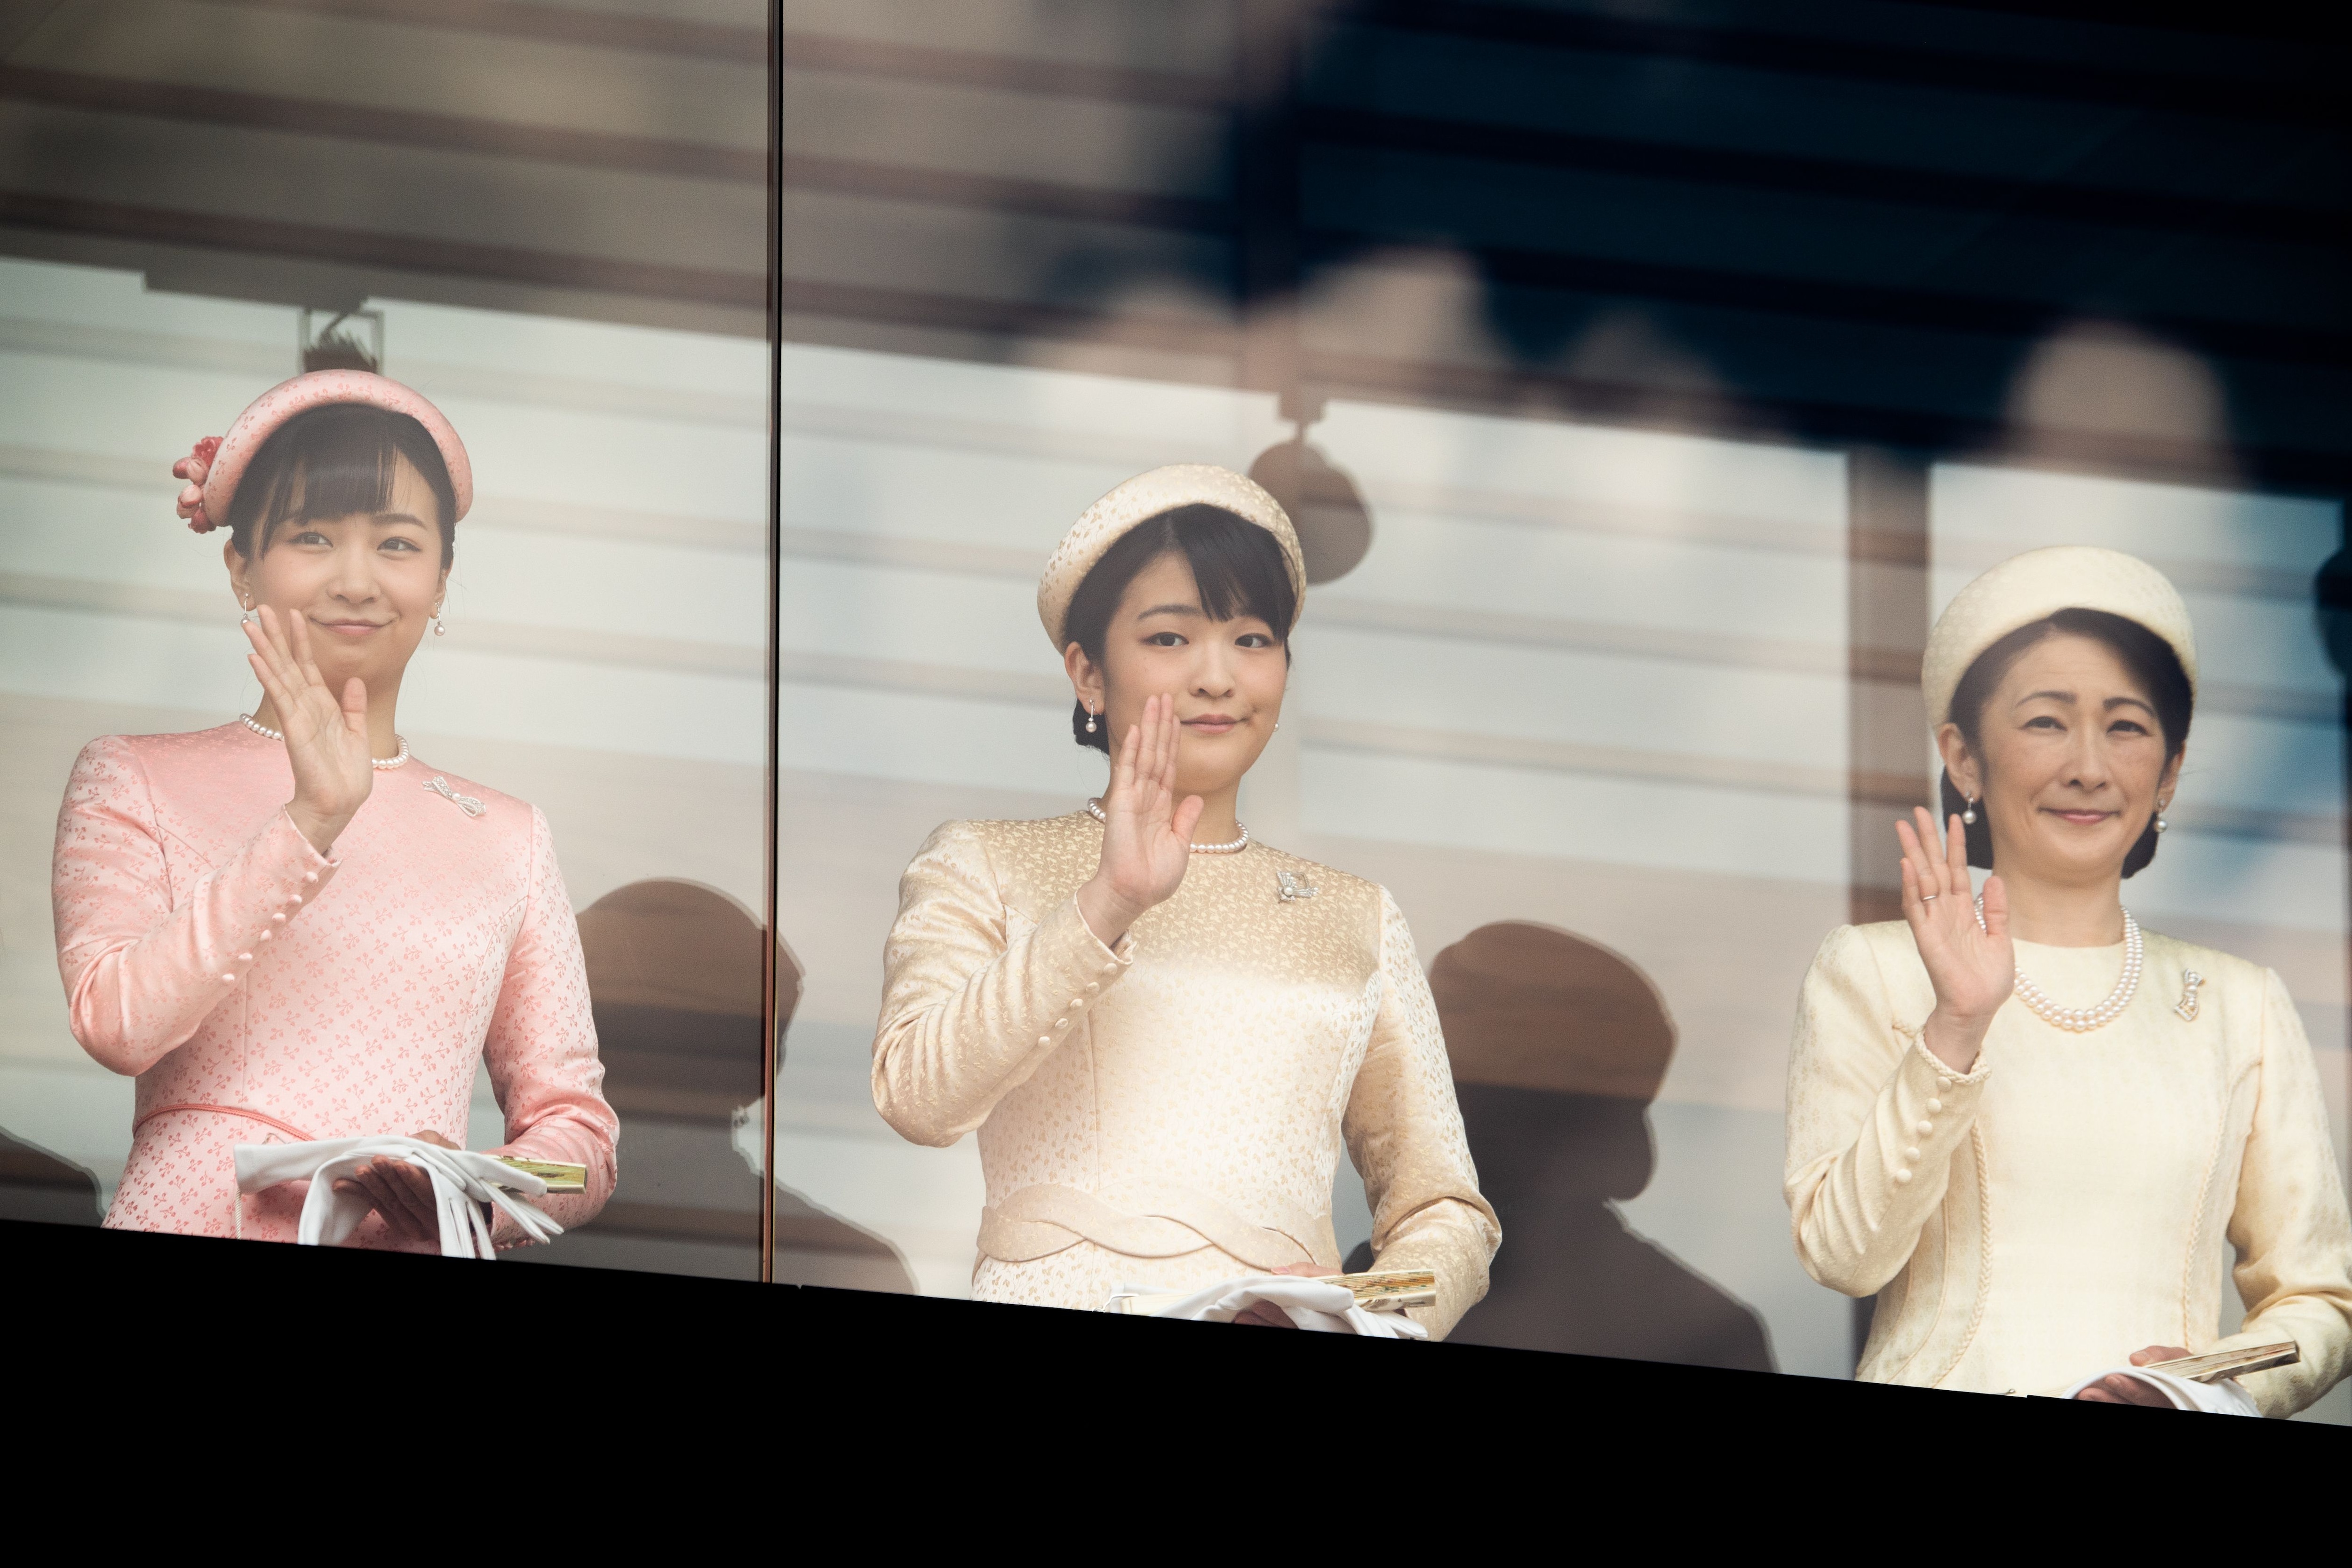 2019年5月4日、天皇陛下の即位を祝う一般参賀での紀子さま、眞子さま（当時）、佳子さま　©文藝春秋